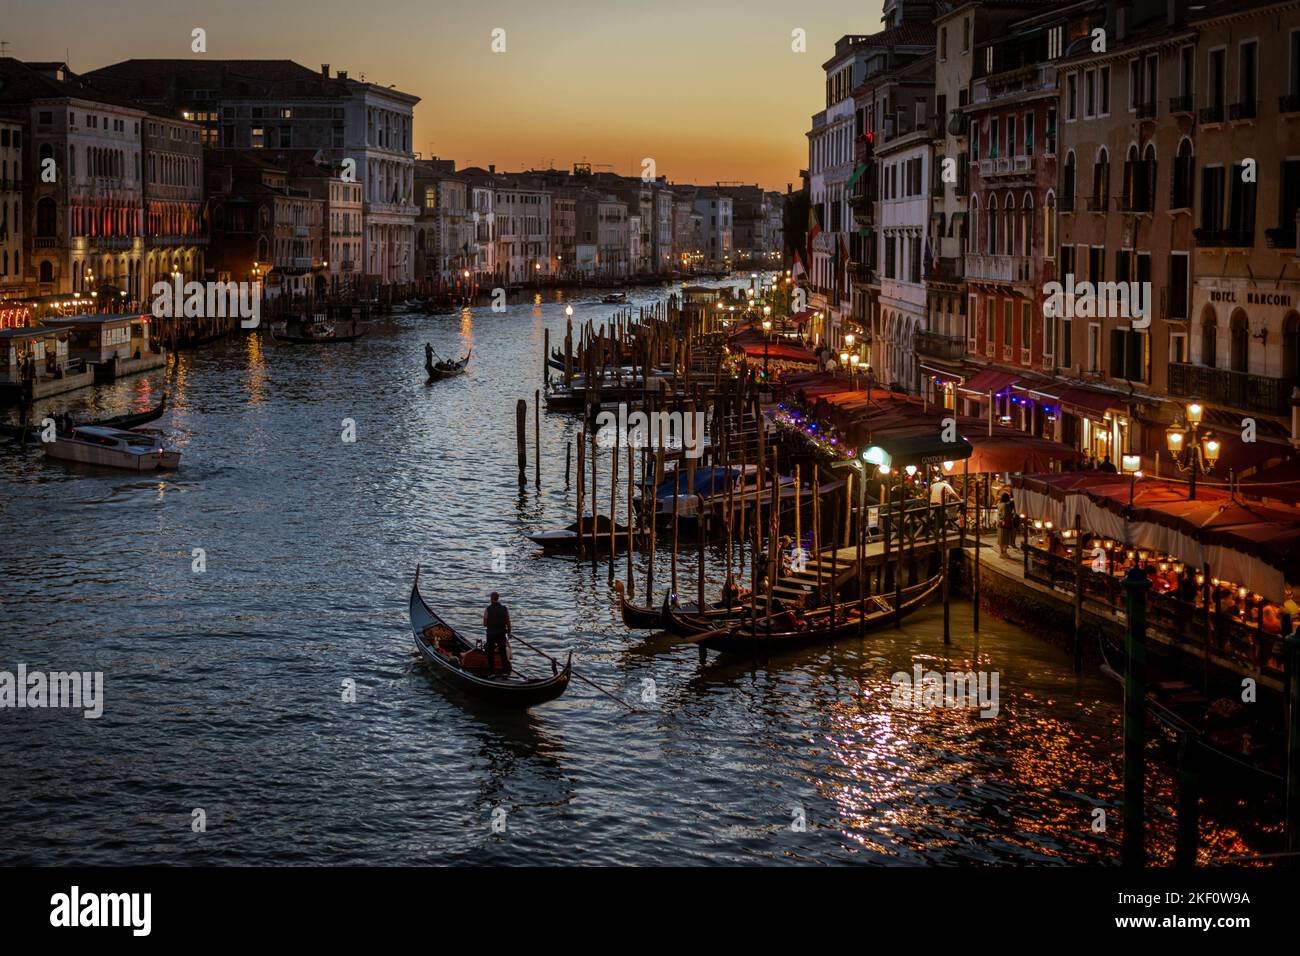 Traditional Venetian row boats gondolas on Grand Canal in Venice, Italy Stock Photo